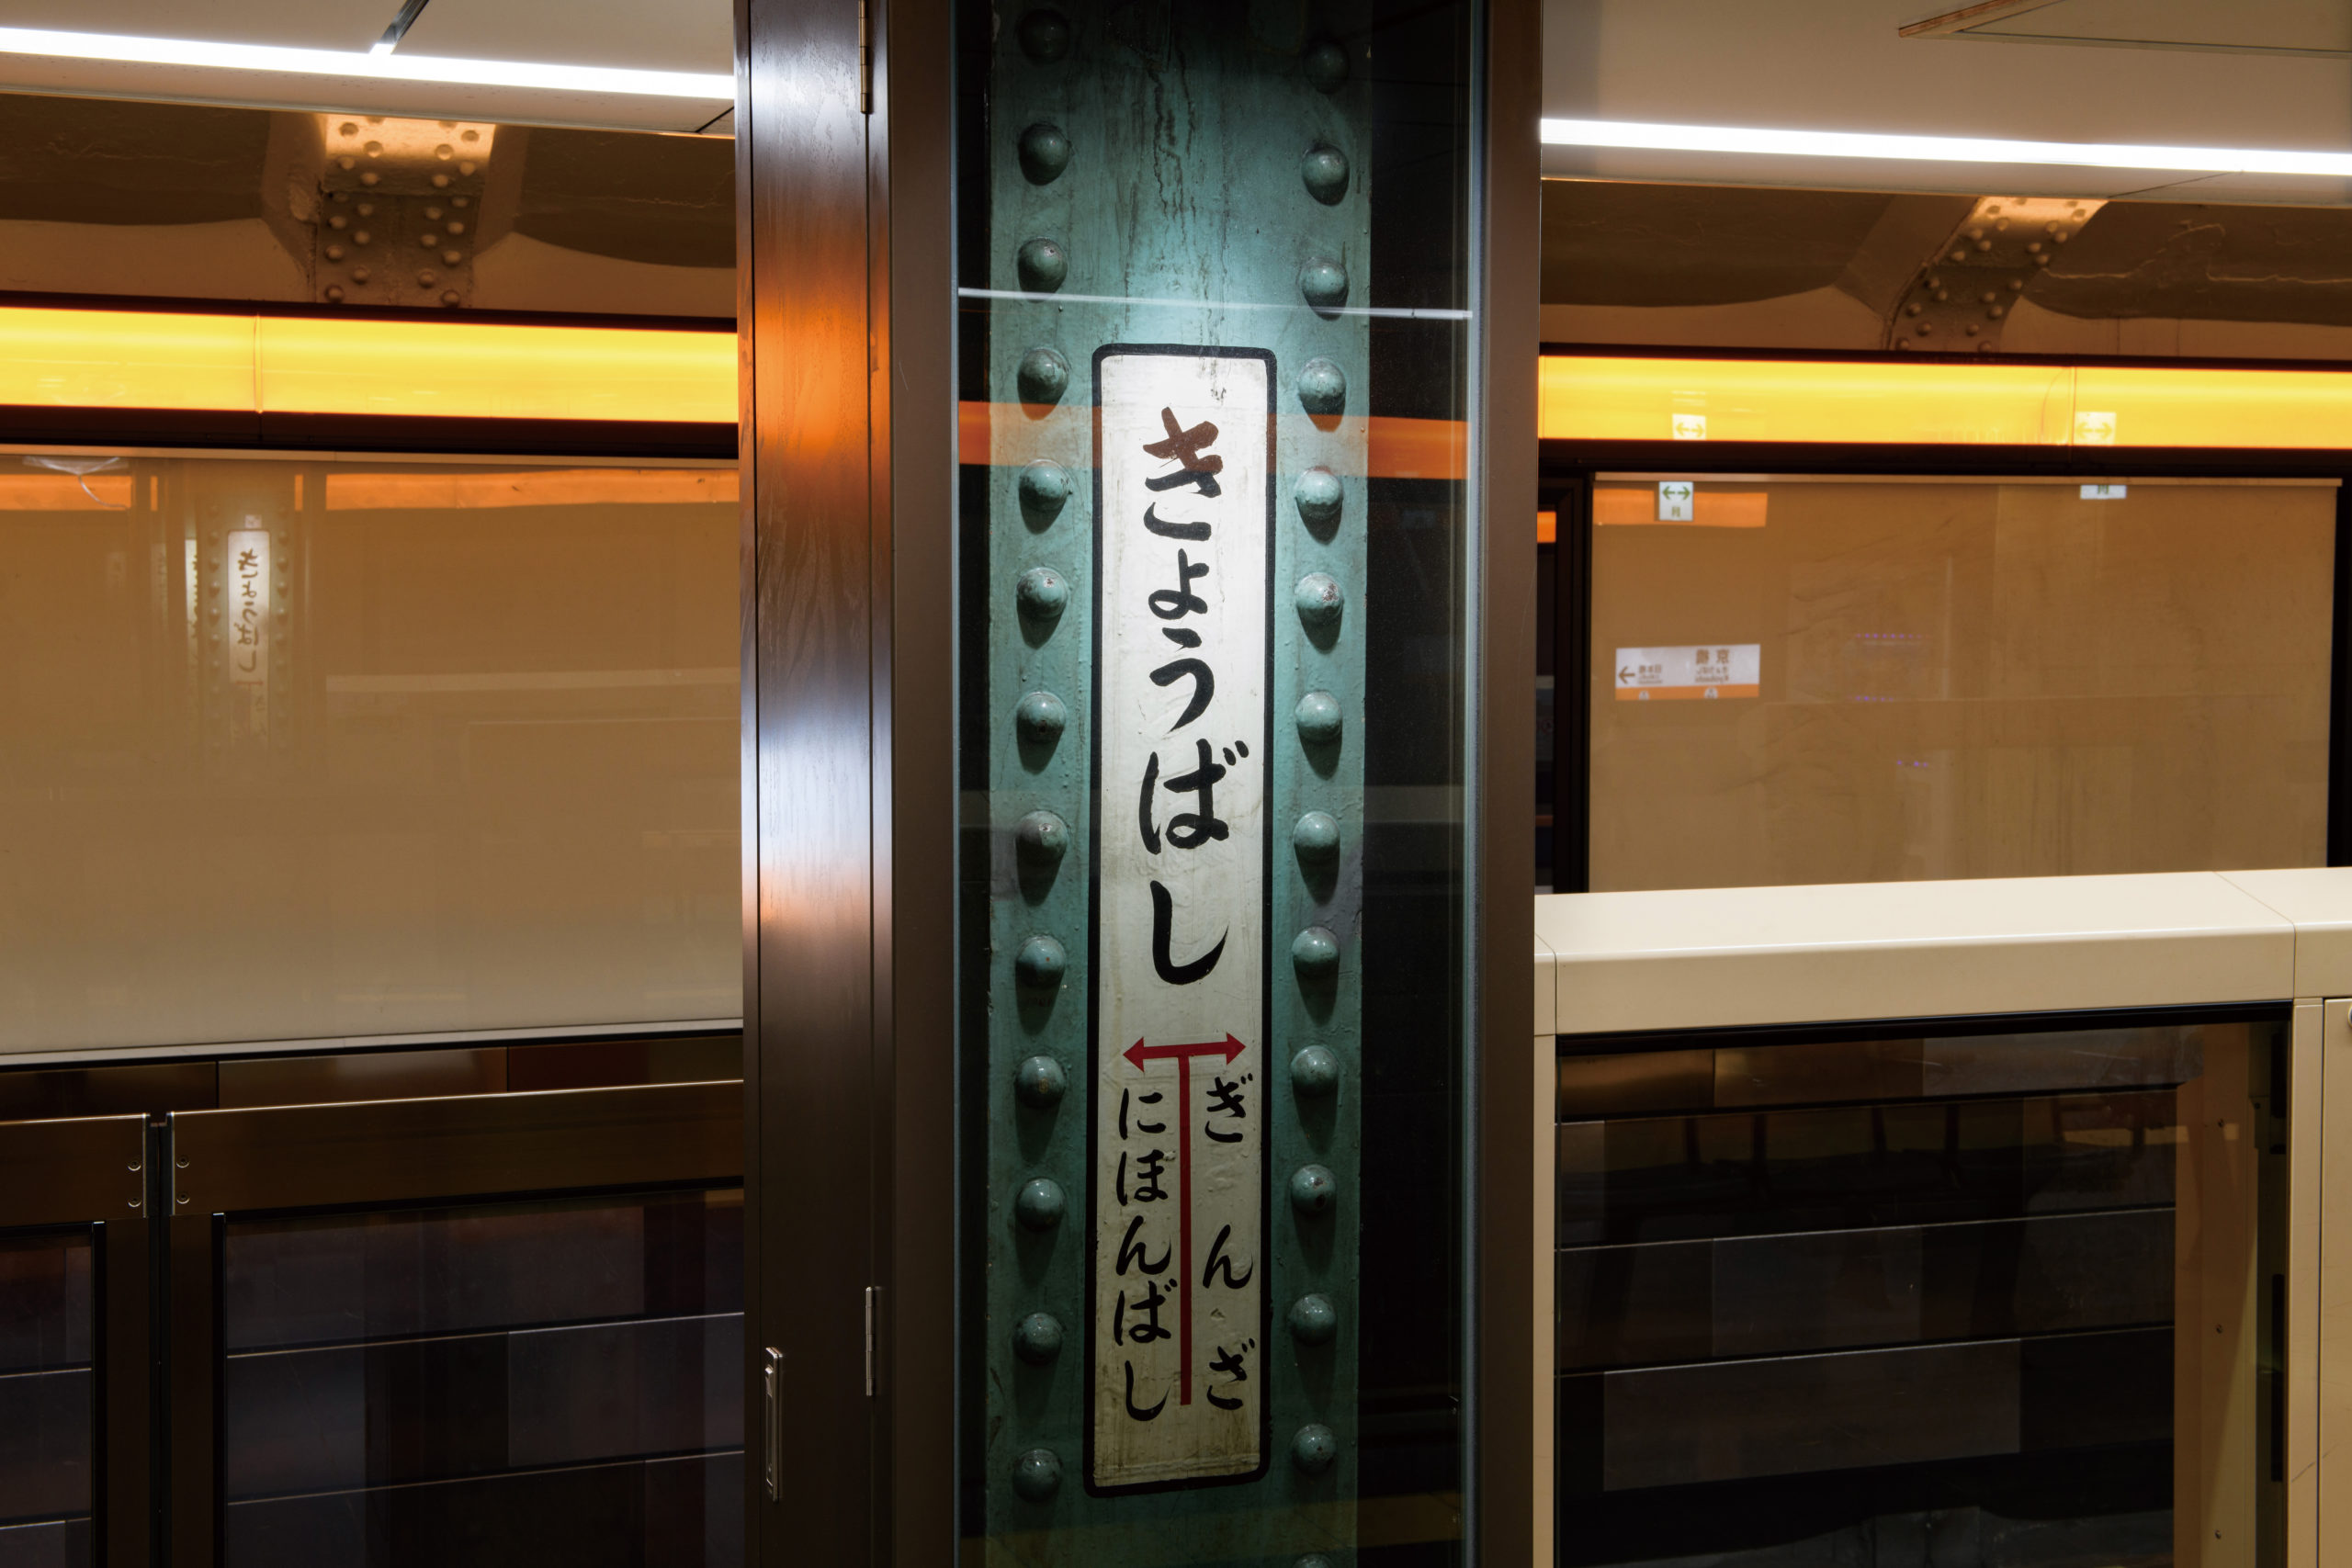 東京メトロ銀座線 京橋駅 日本橋駅（ノンスケール設計案件）